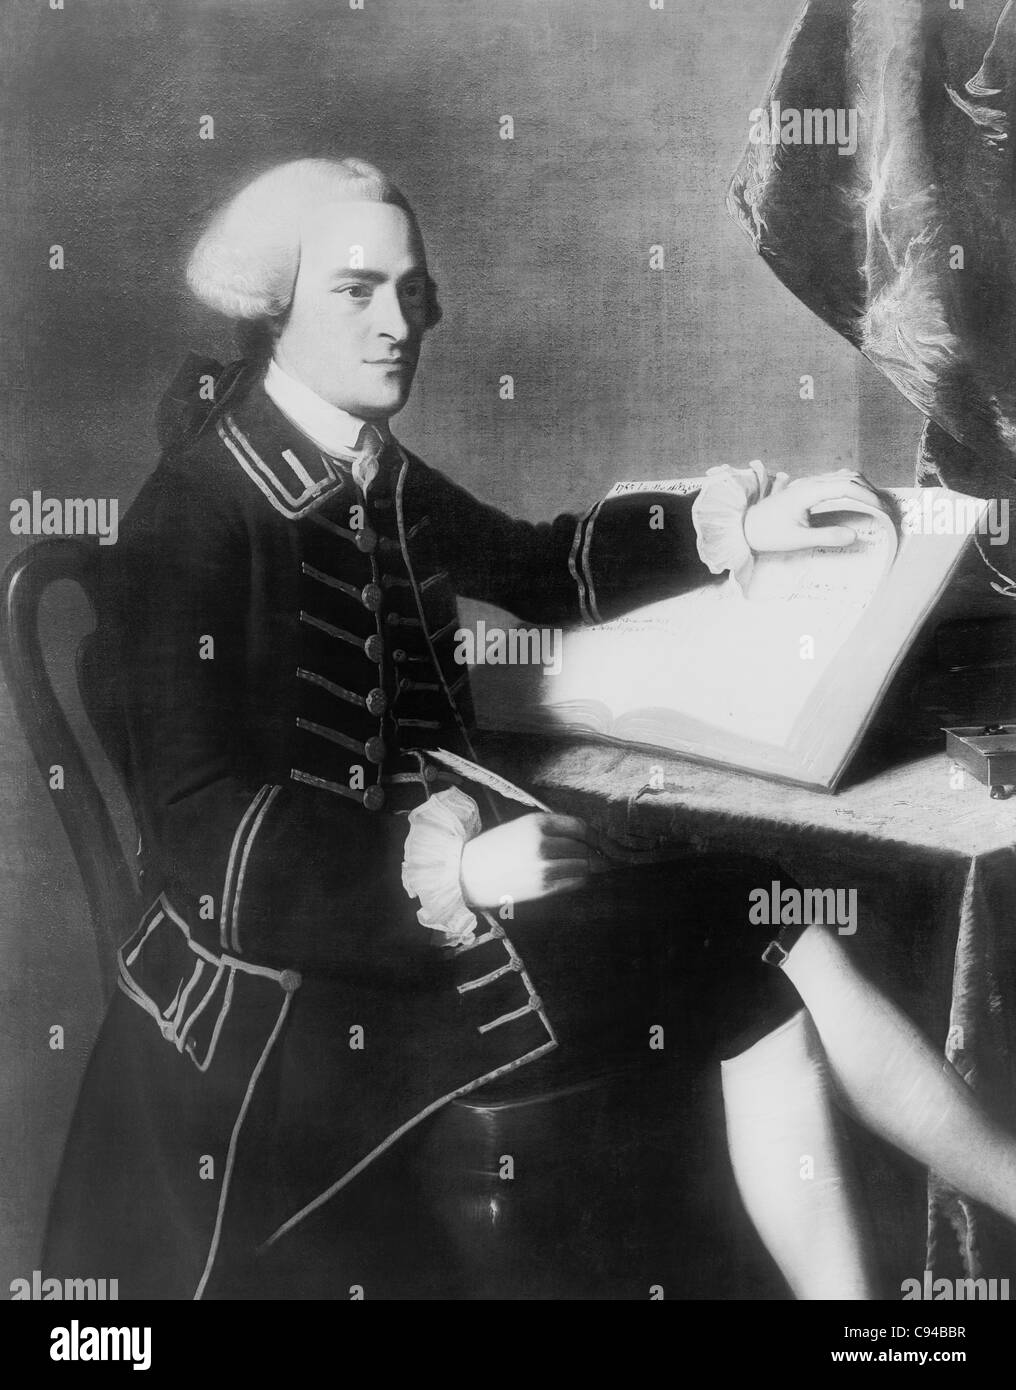 Vintage ritratto dipinto di statista americano John Hancock (1737 - 1793) - Presidente del Secondo Congresso continentale da 1775 a 1777 e la prima persona a firmare la dichiarazione di indipendenza. Foto Stock